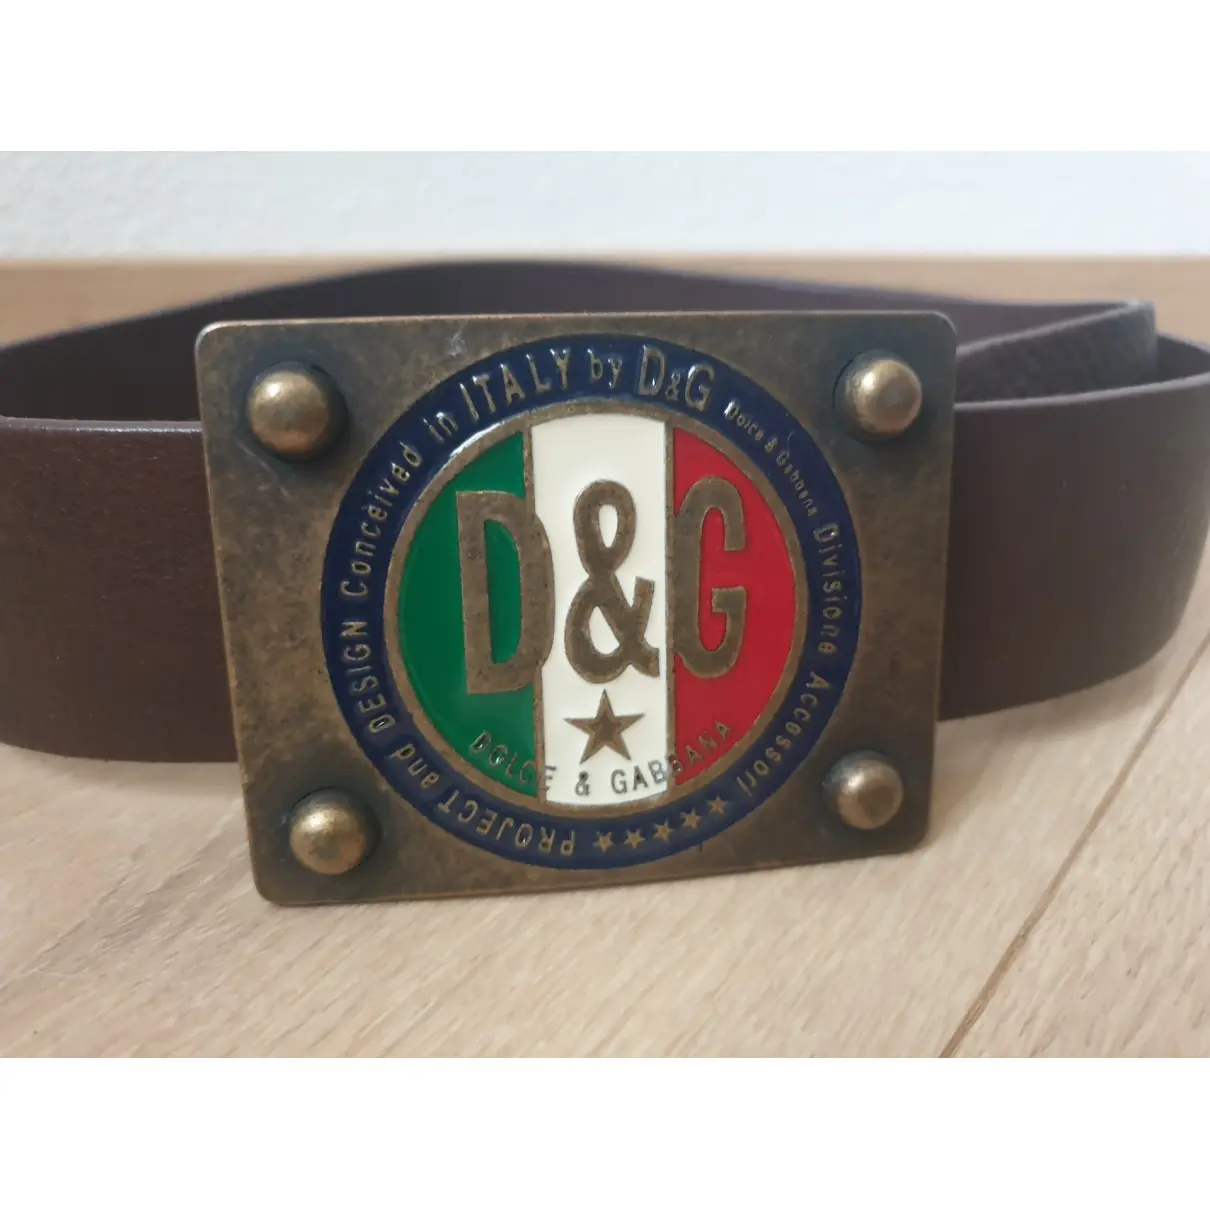 Dolce & Gabbana Leather belt for sale - Vintage